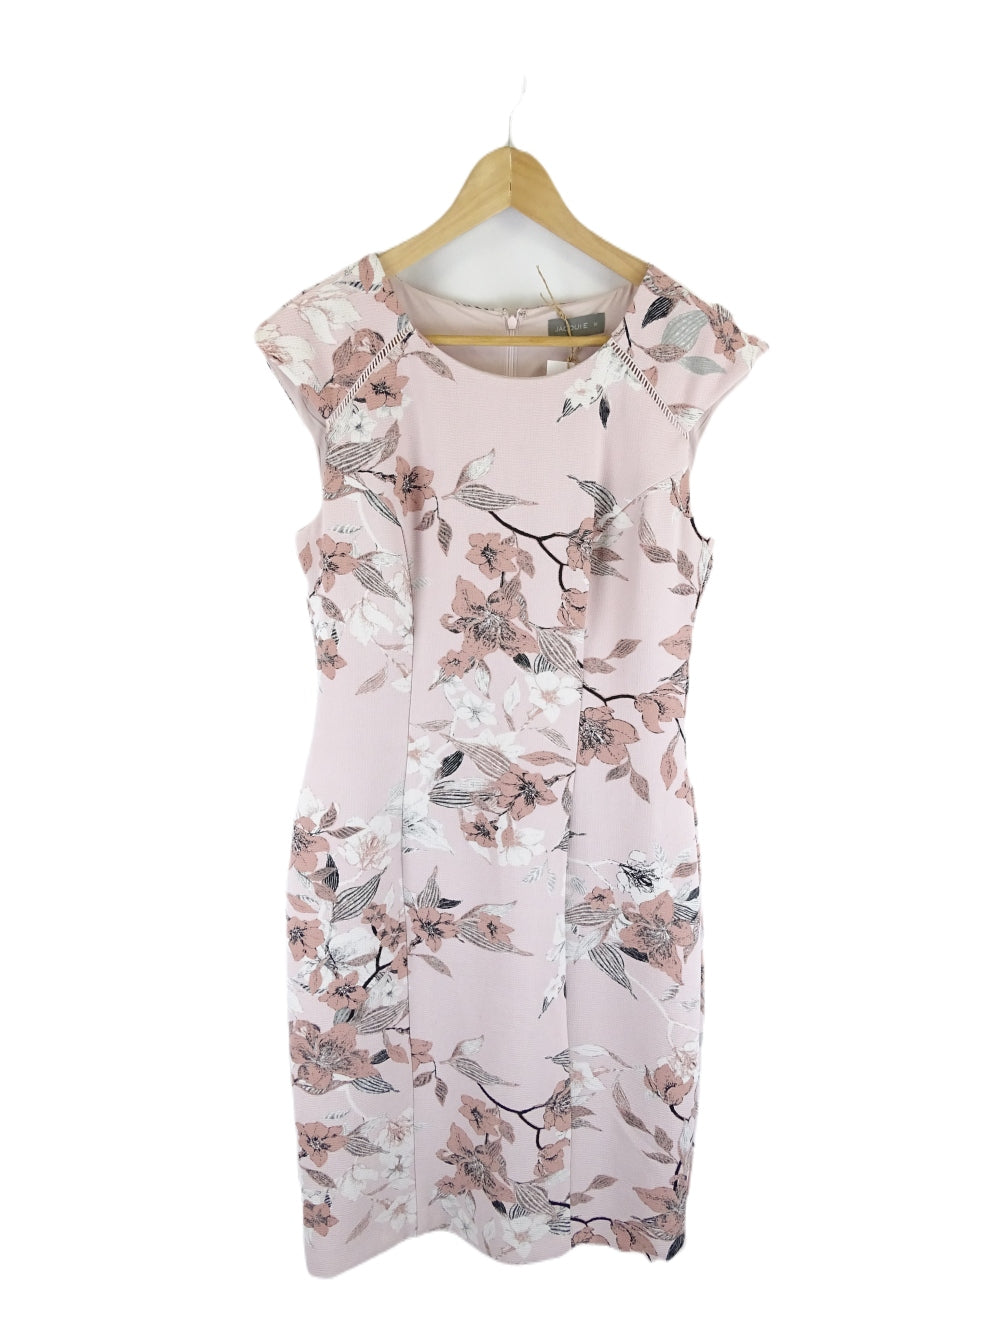 Jacquie E Pink Floral Dress 10